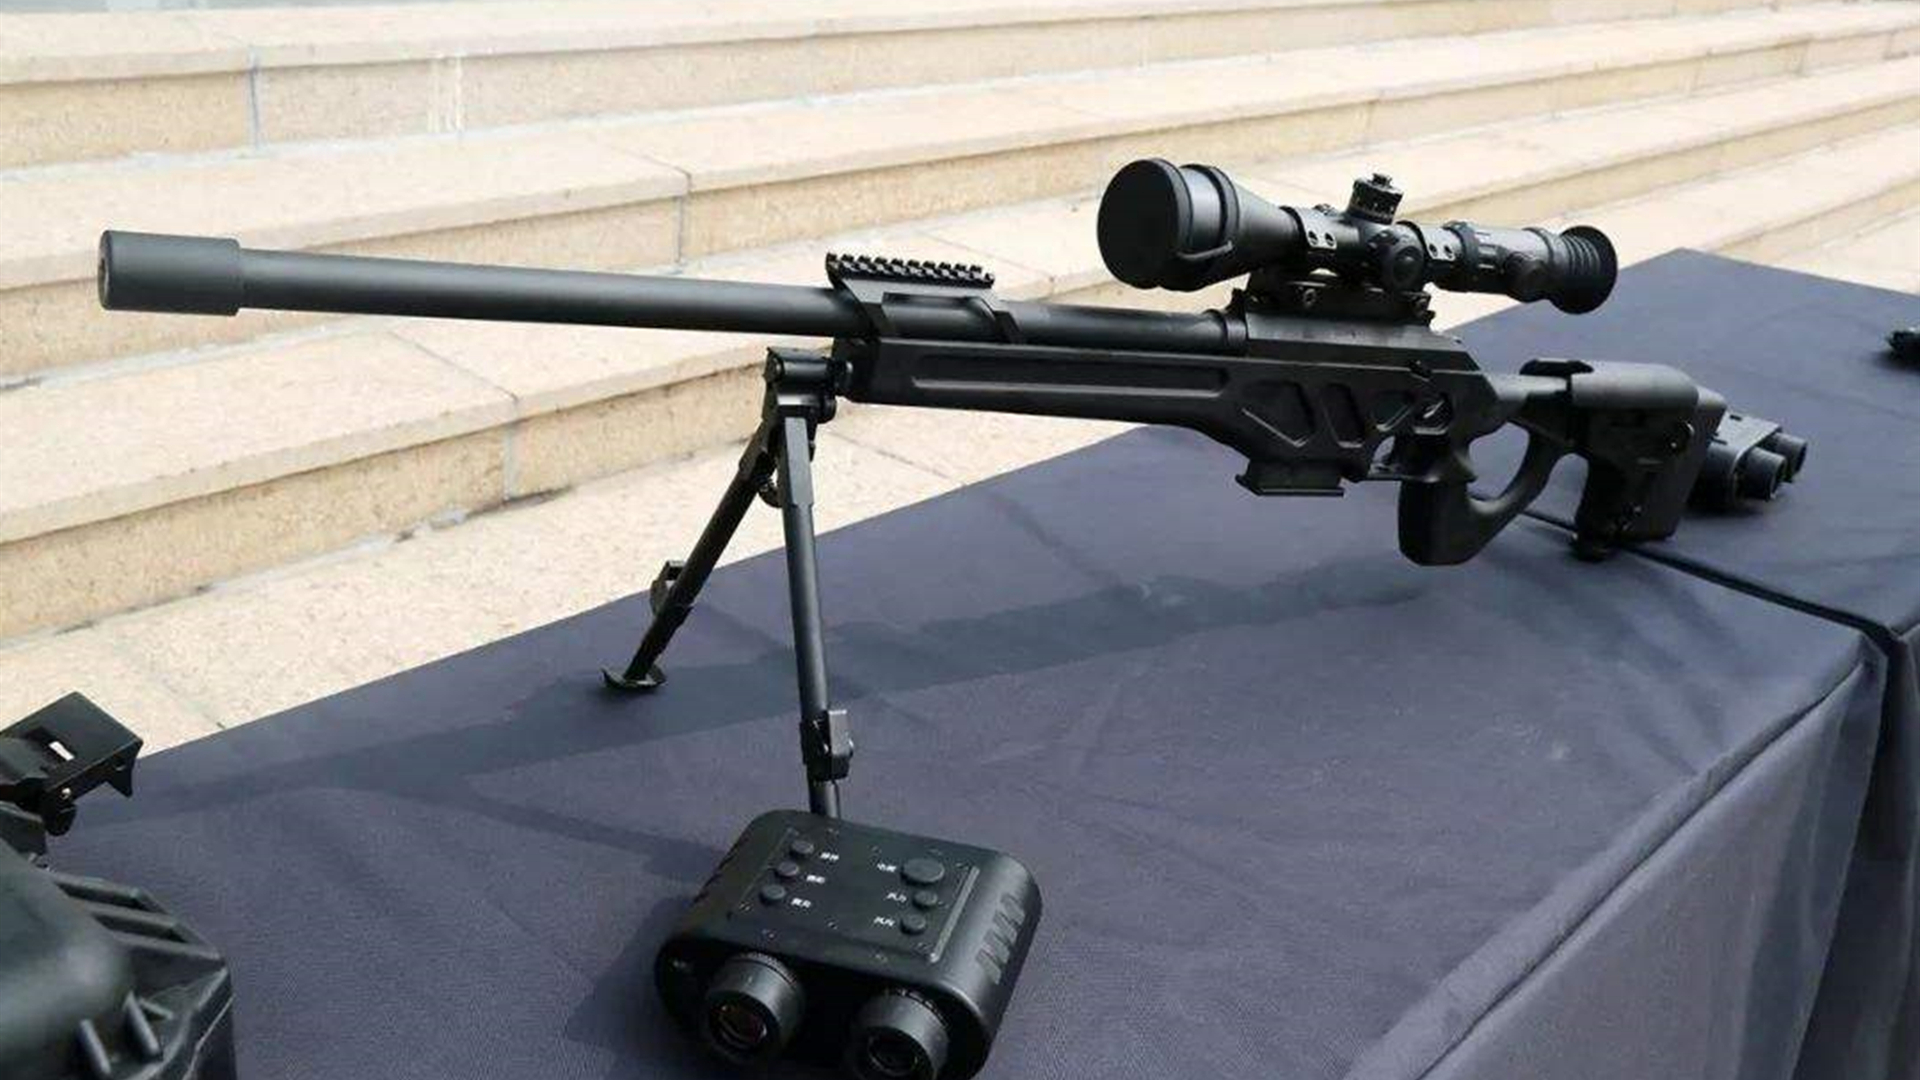 国产15型狙击步枪图片